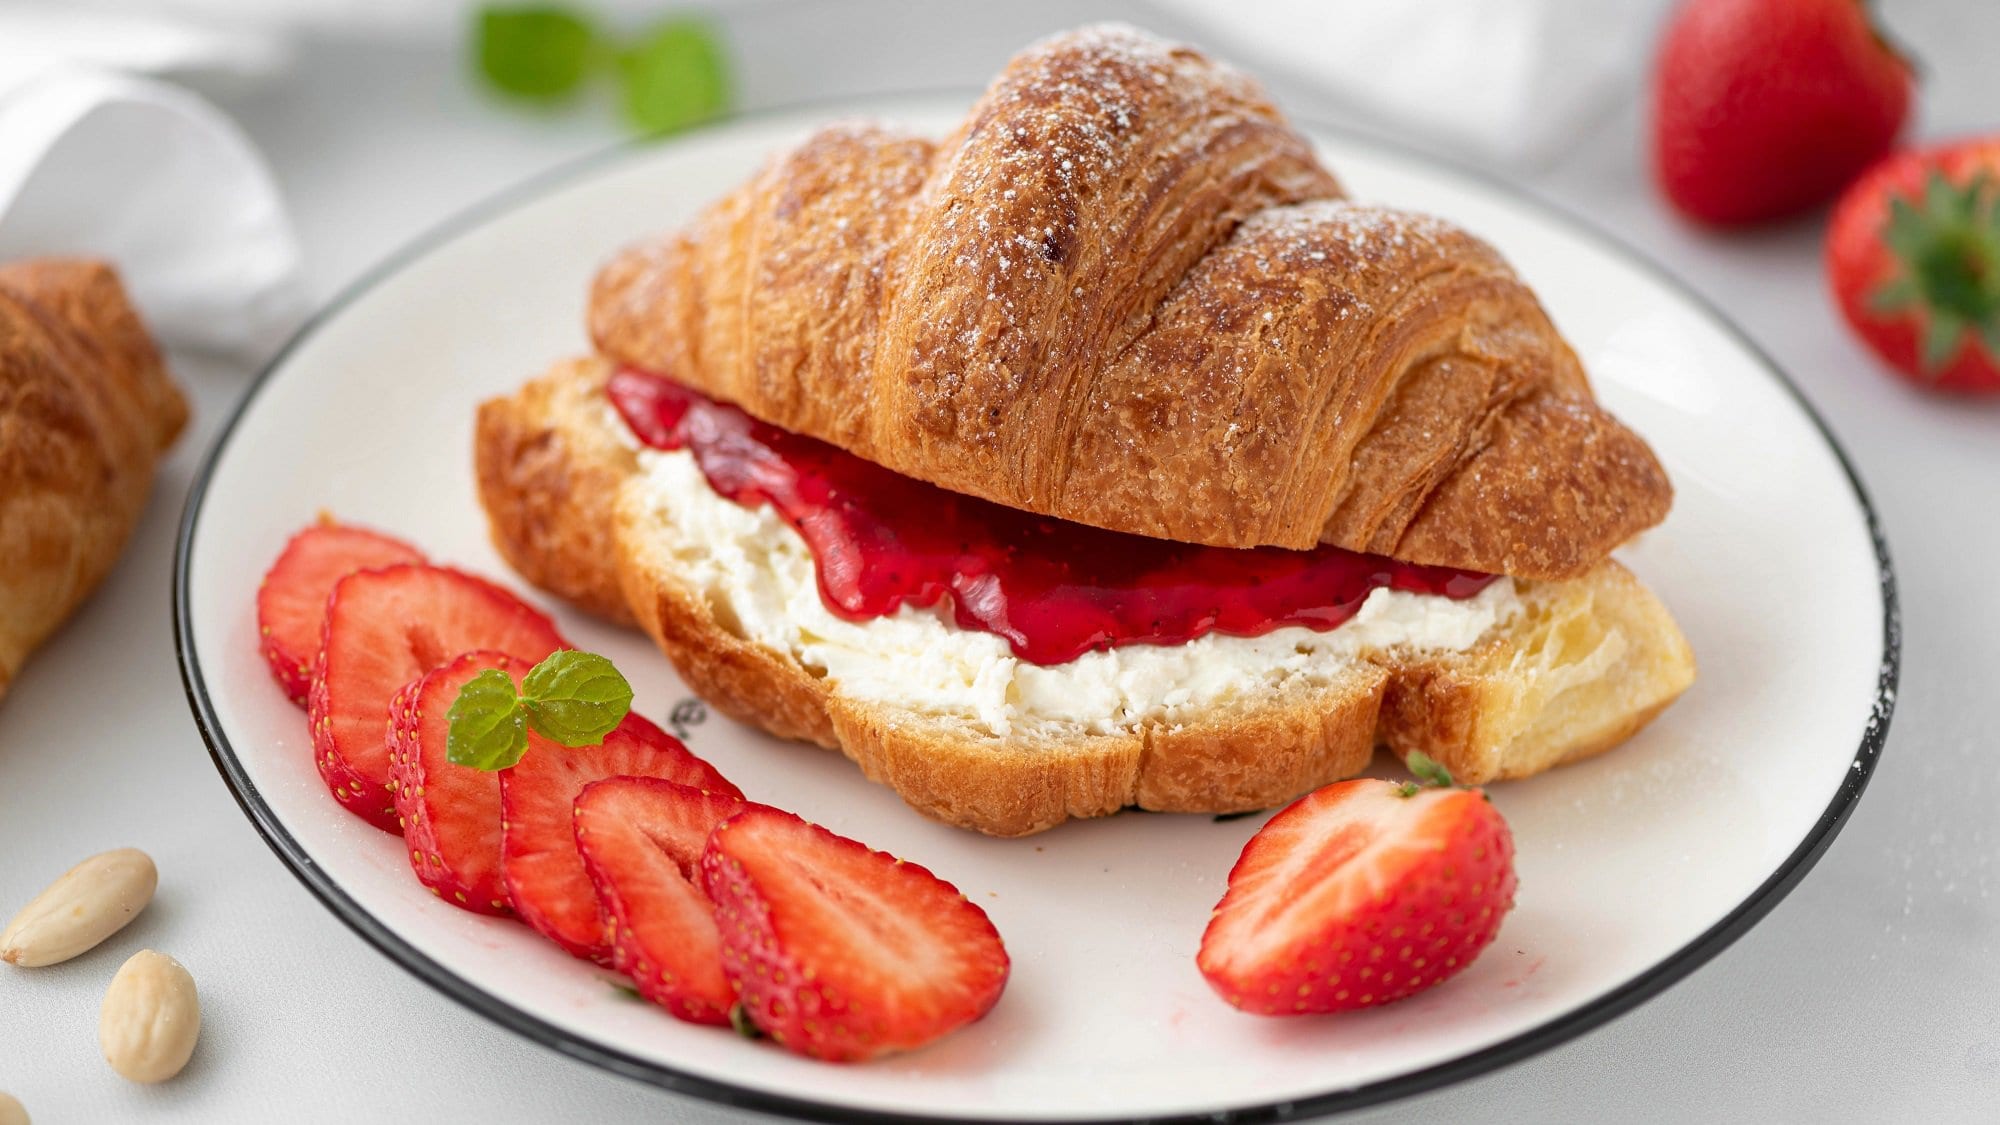 Auf einem weißen Teller liegt ein Erdbeer-Croissant mit Ricotta-Minze. Neben dem Gebäck liegen mehrere Erdbeerscheiben.